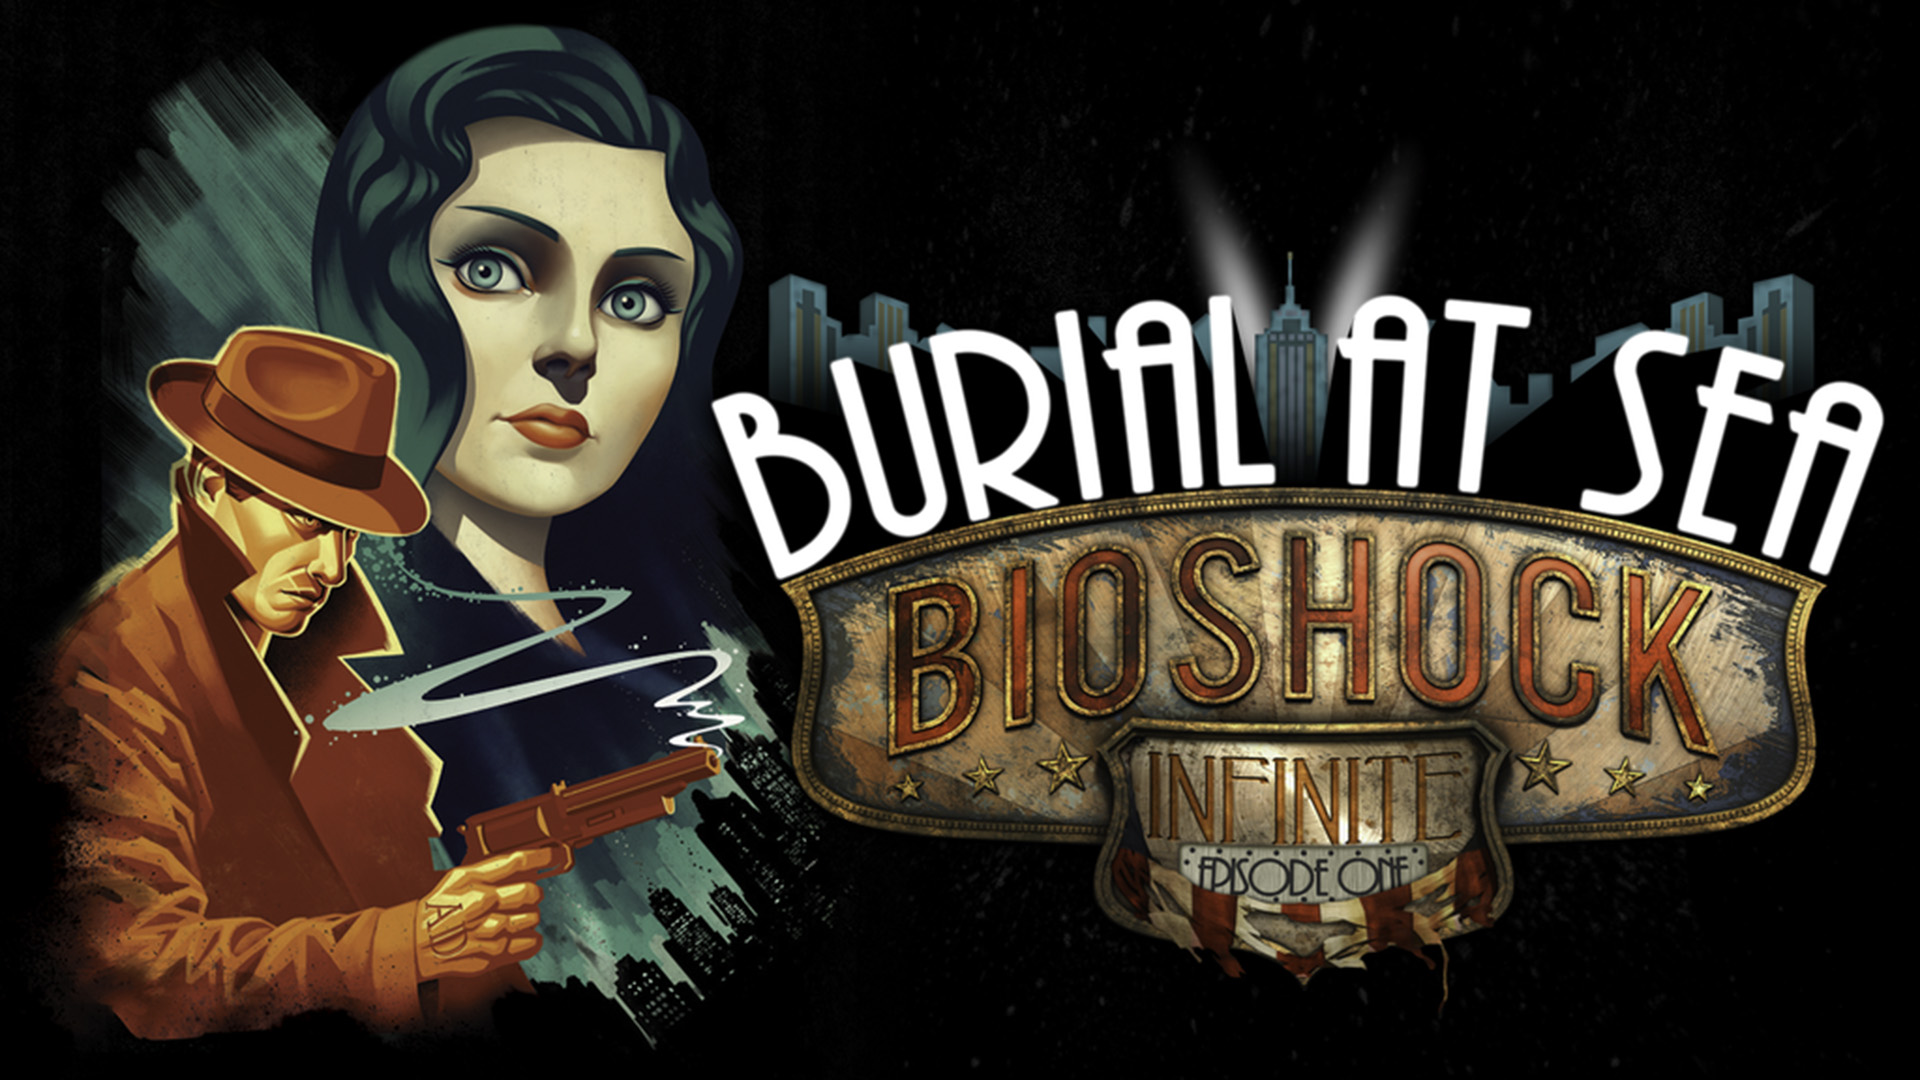 BioShock Infinite: Burial at Sea Wallpapers